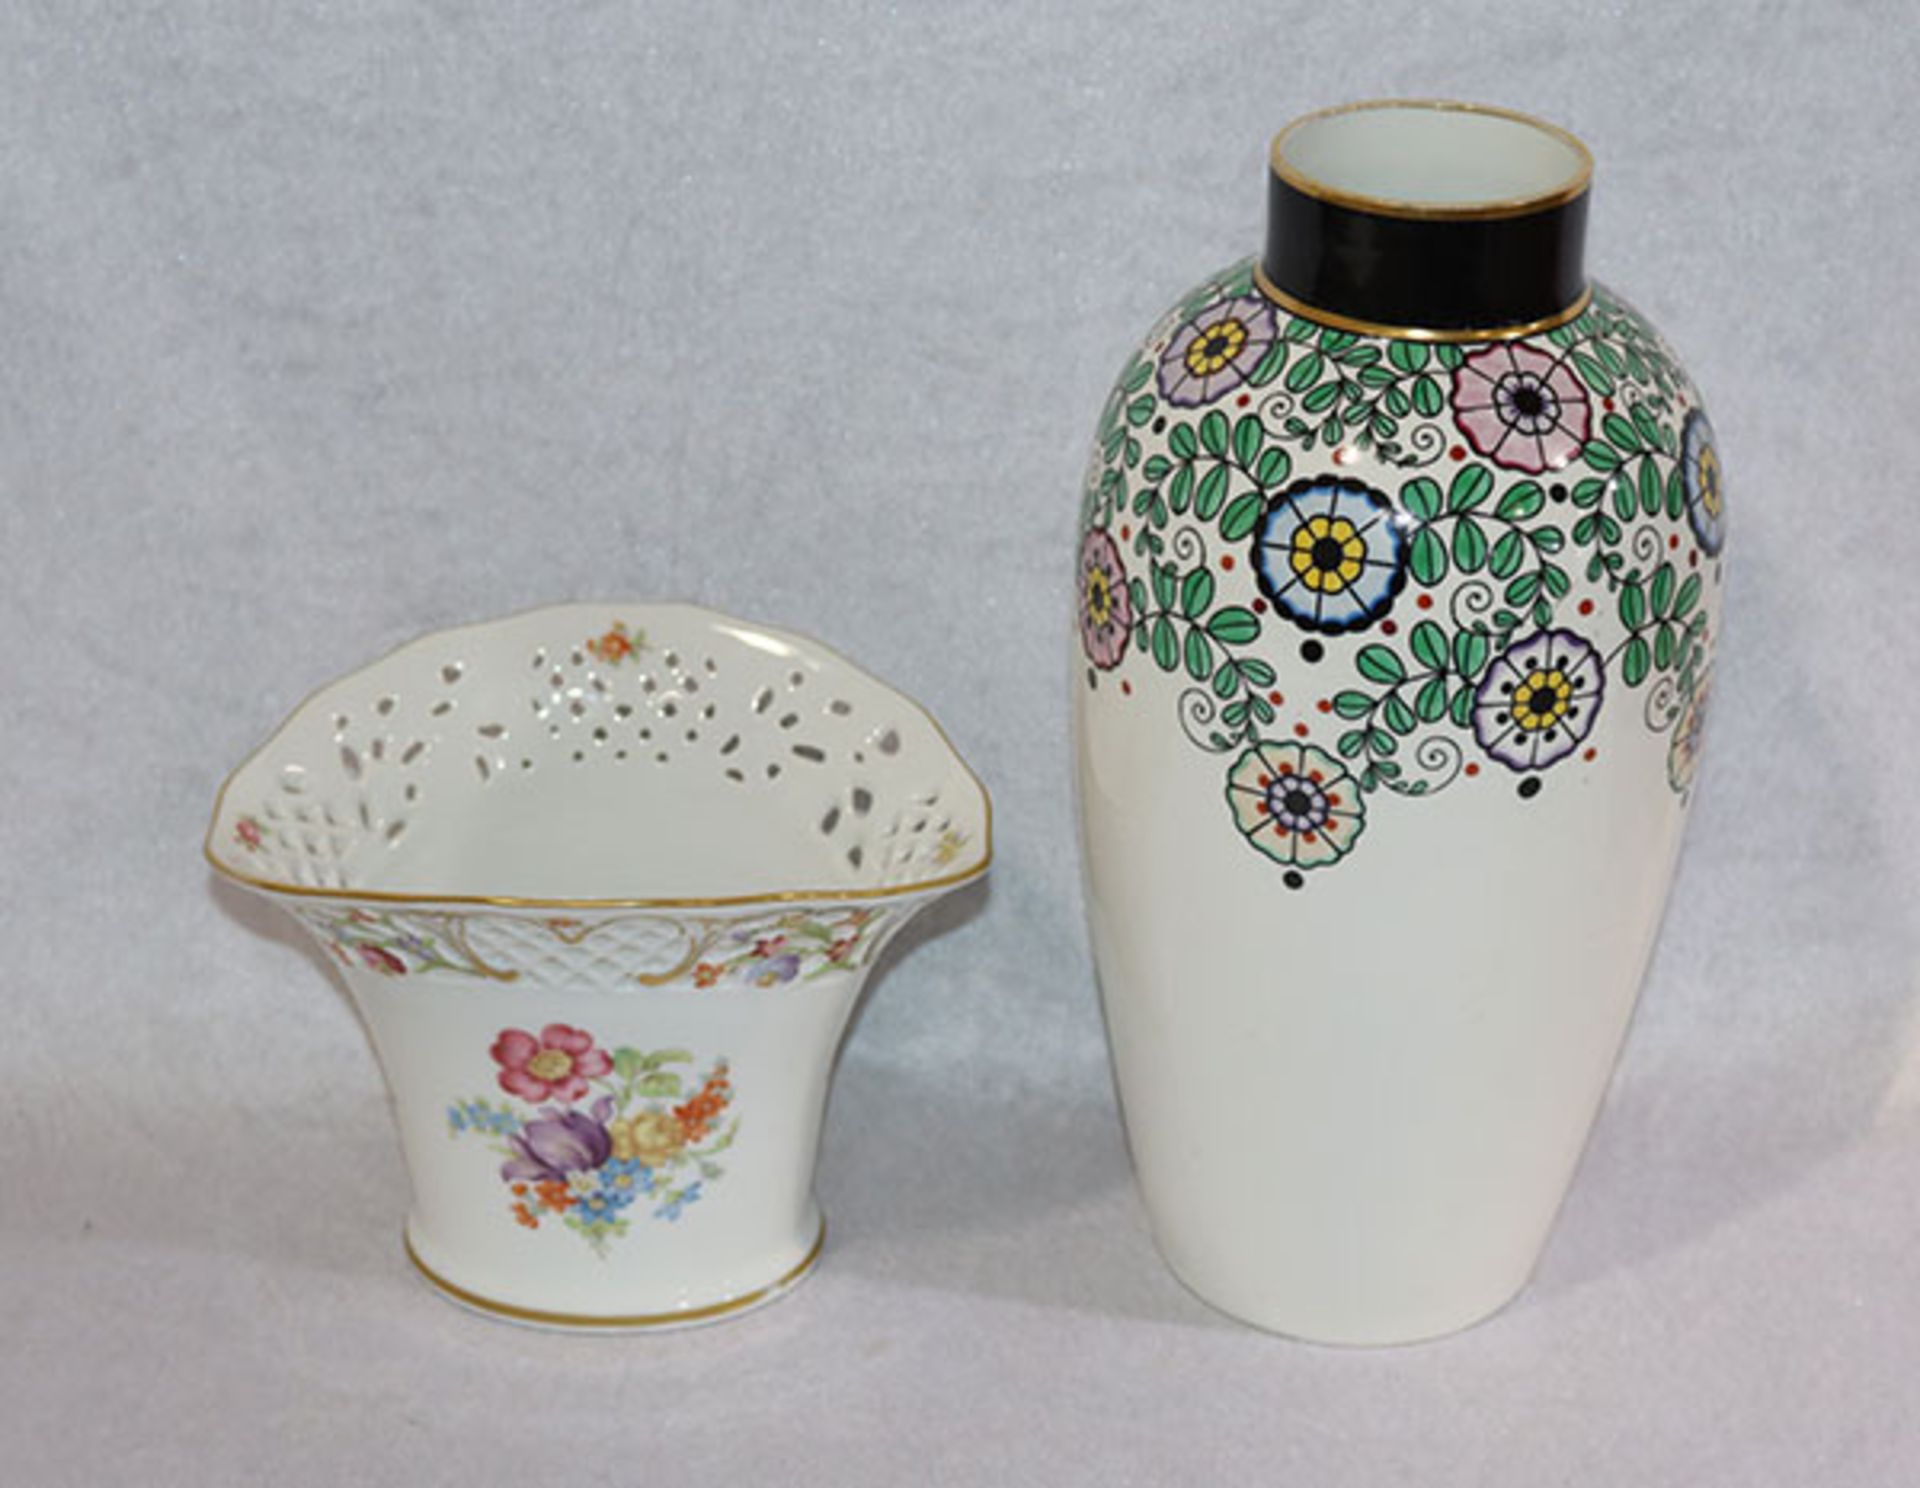 Porzellan Vase mit Blumendekor, gemarkt Müller, Selb, H 31 cm, und Schumann Porzellan Vase mit